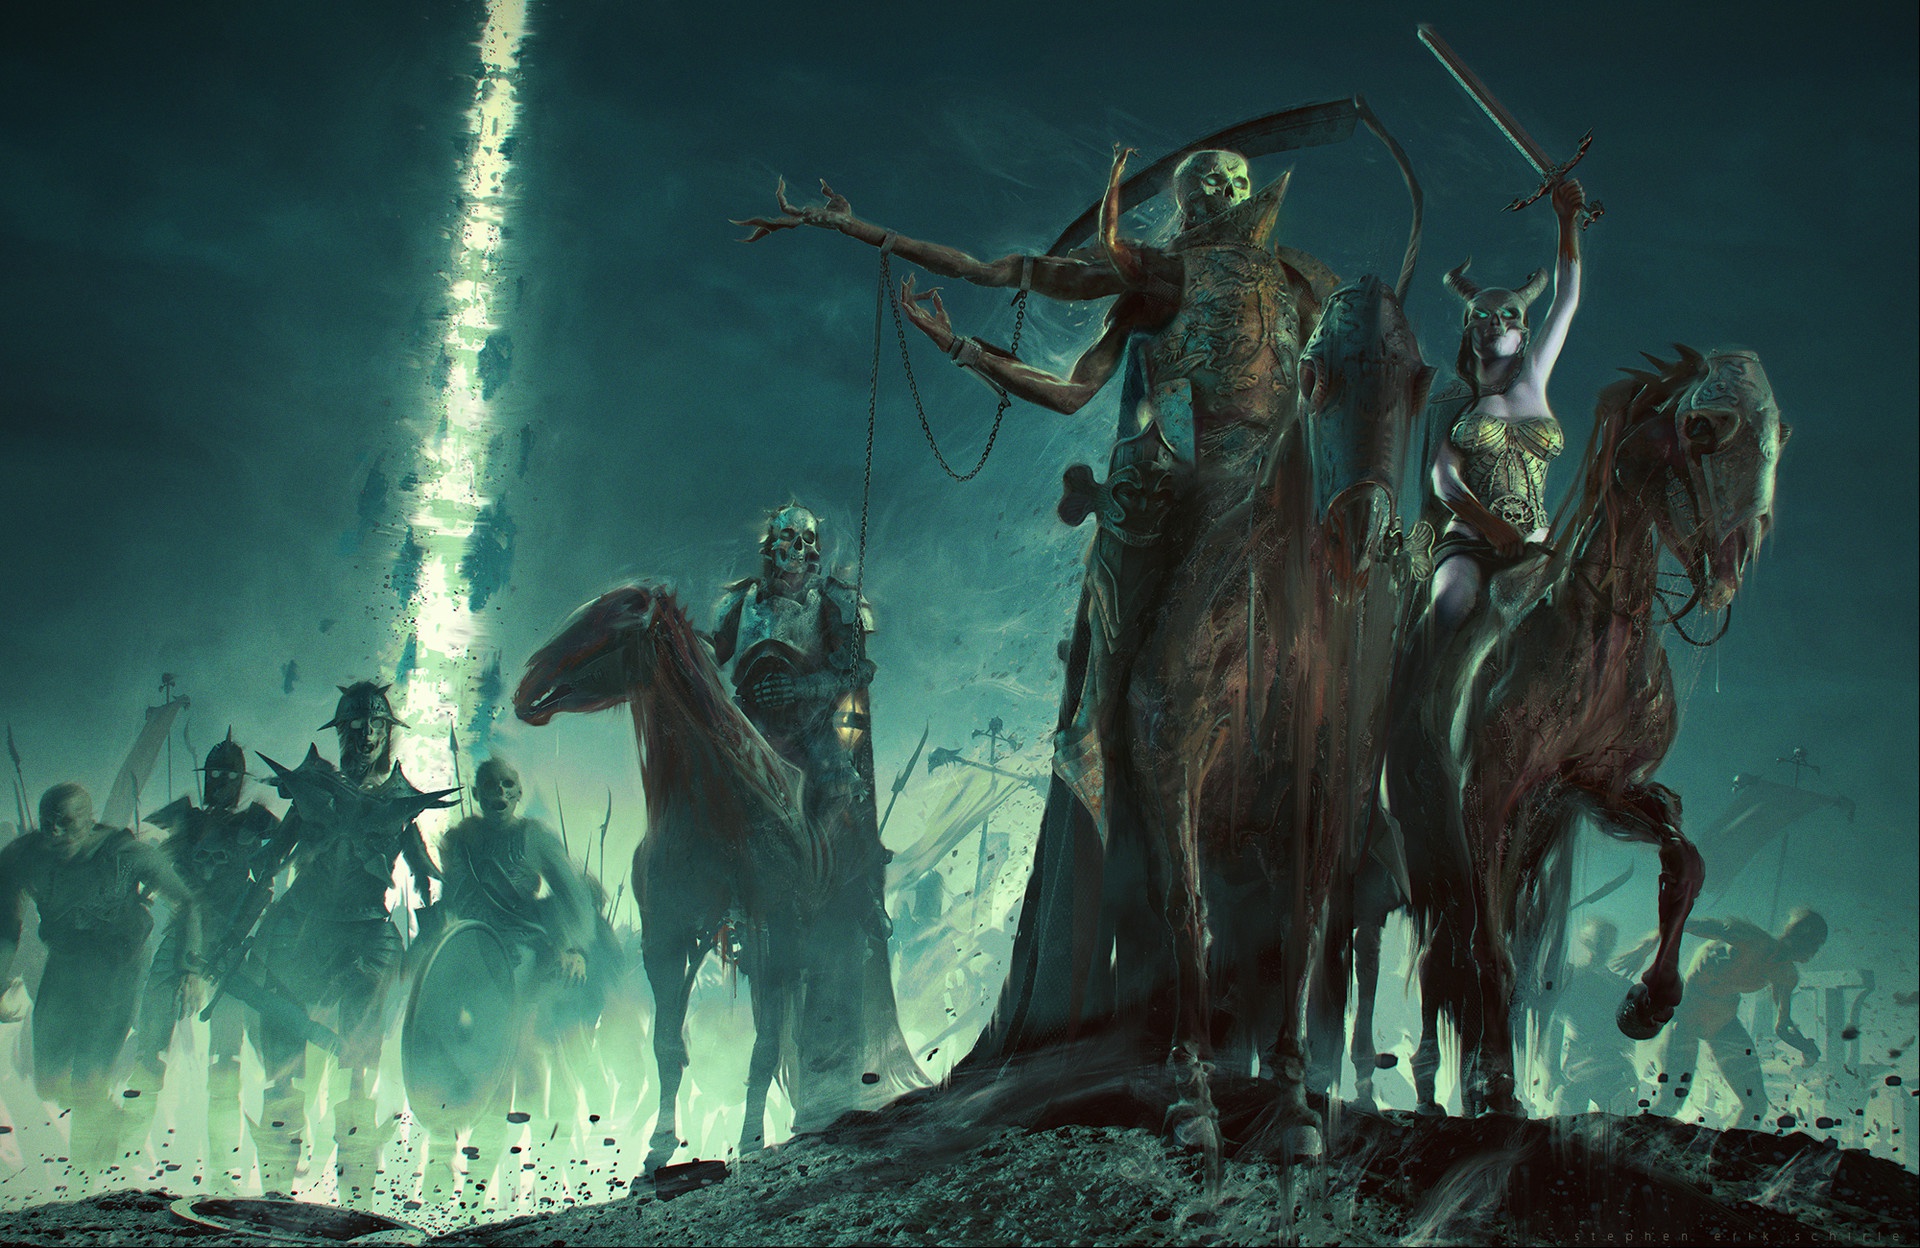 Free download wallpaper Dark, Warrior, Creature, Horse, Sword, Undead, Woman Warrior on your PC desktop